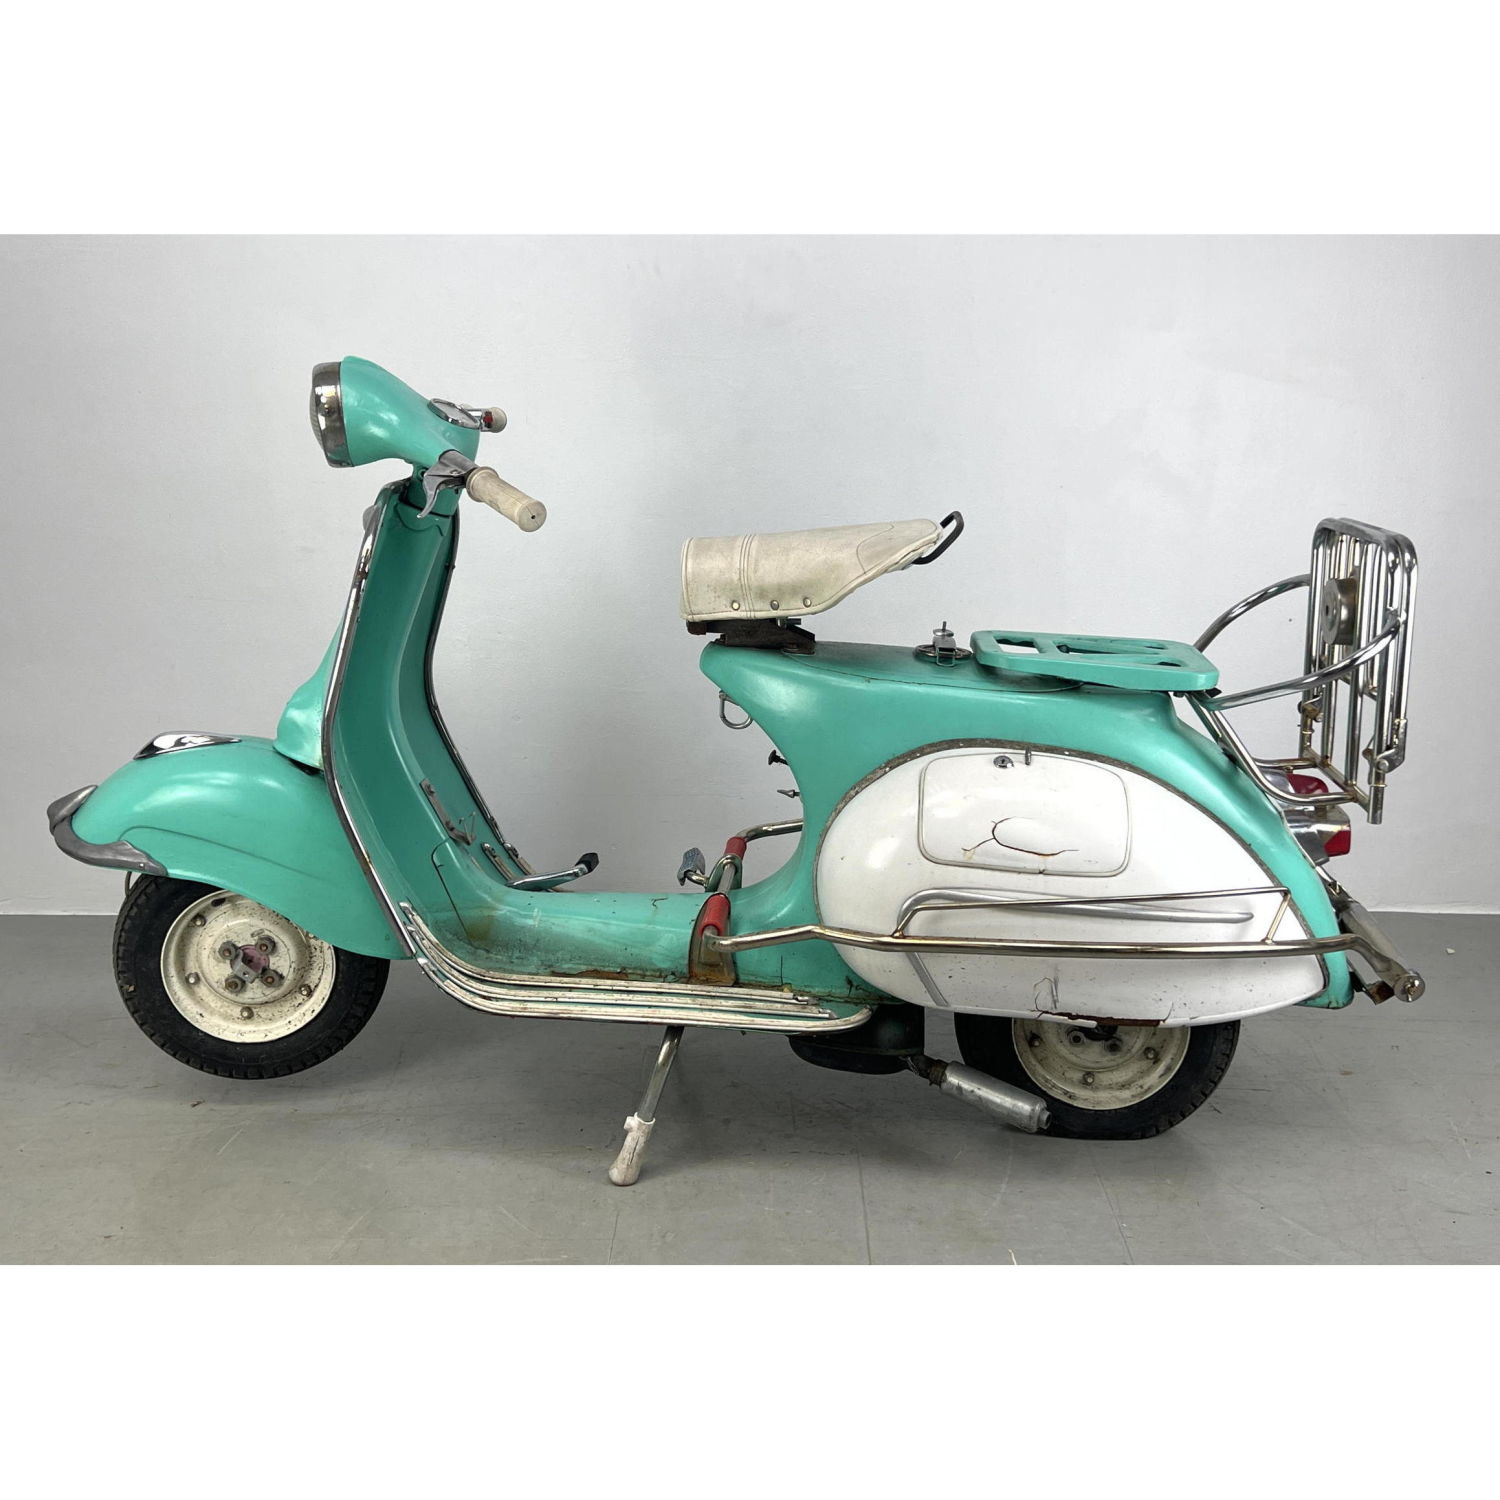 1962 Piaggio scooter. Vespa style.